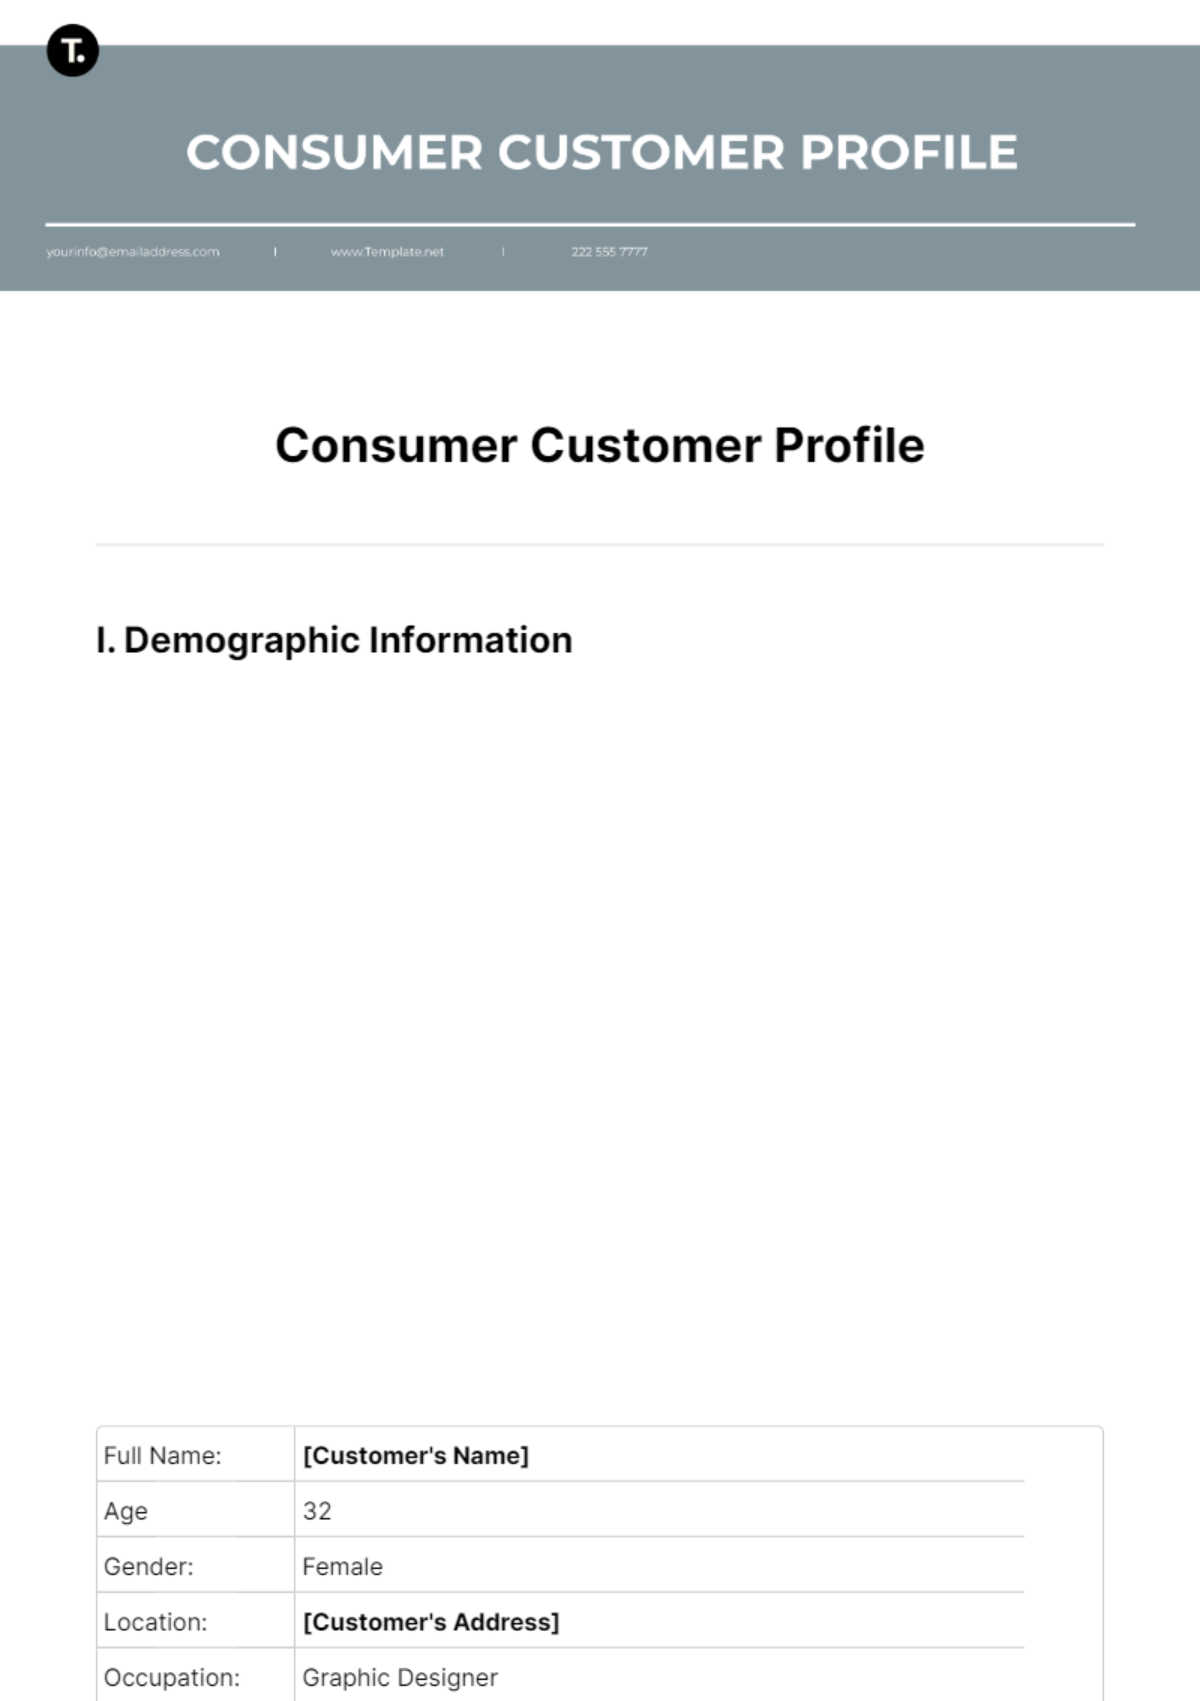 Consumer Customer Profile Template